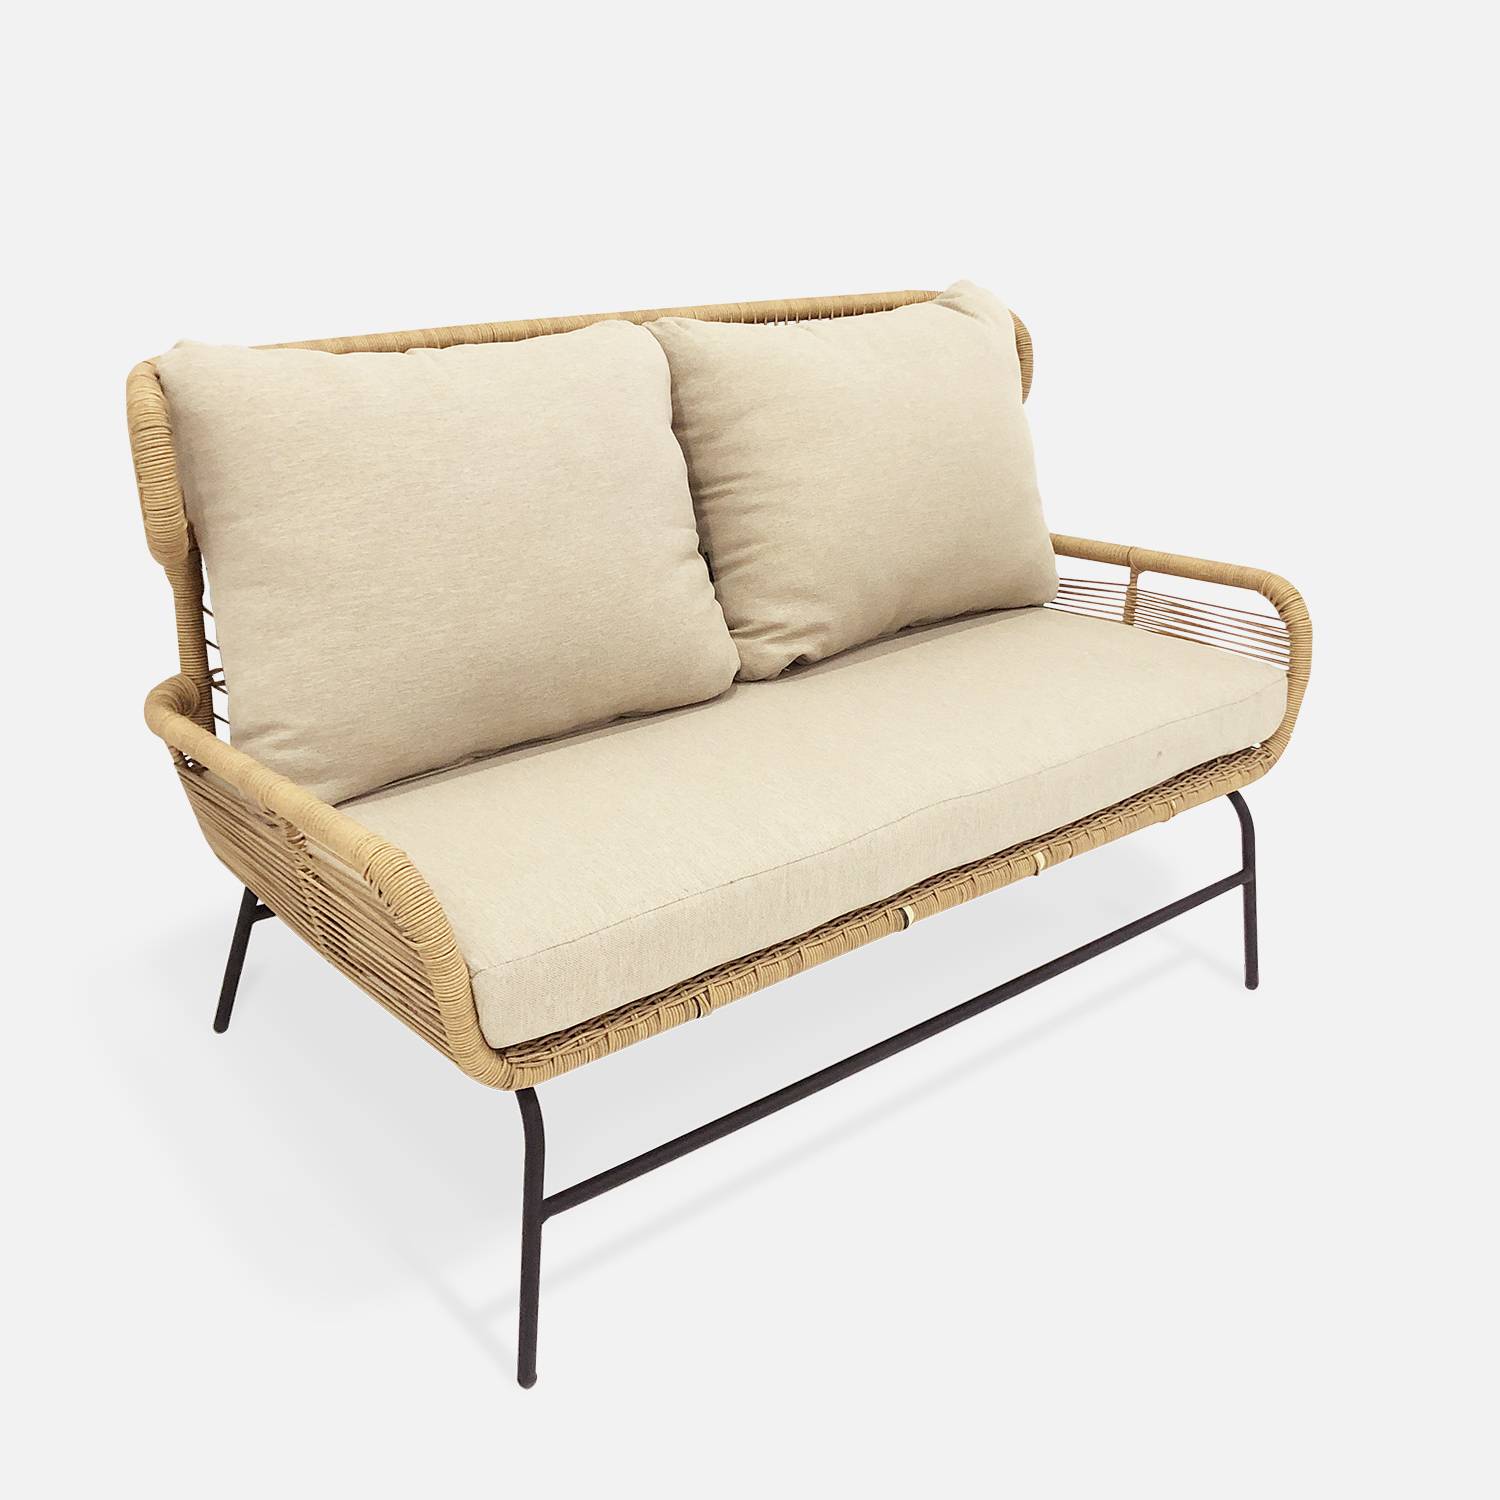 BALI niedrige Gartengarnitur 4 Sitze - Set Sofa mit 2 Sitzen und 2 Sesseln mit 1 ovaler Beistelltisch, Kunststoffrattan mit Rattan-Effekt, beigefarbene Kissen Photo3